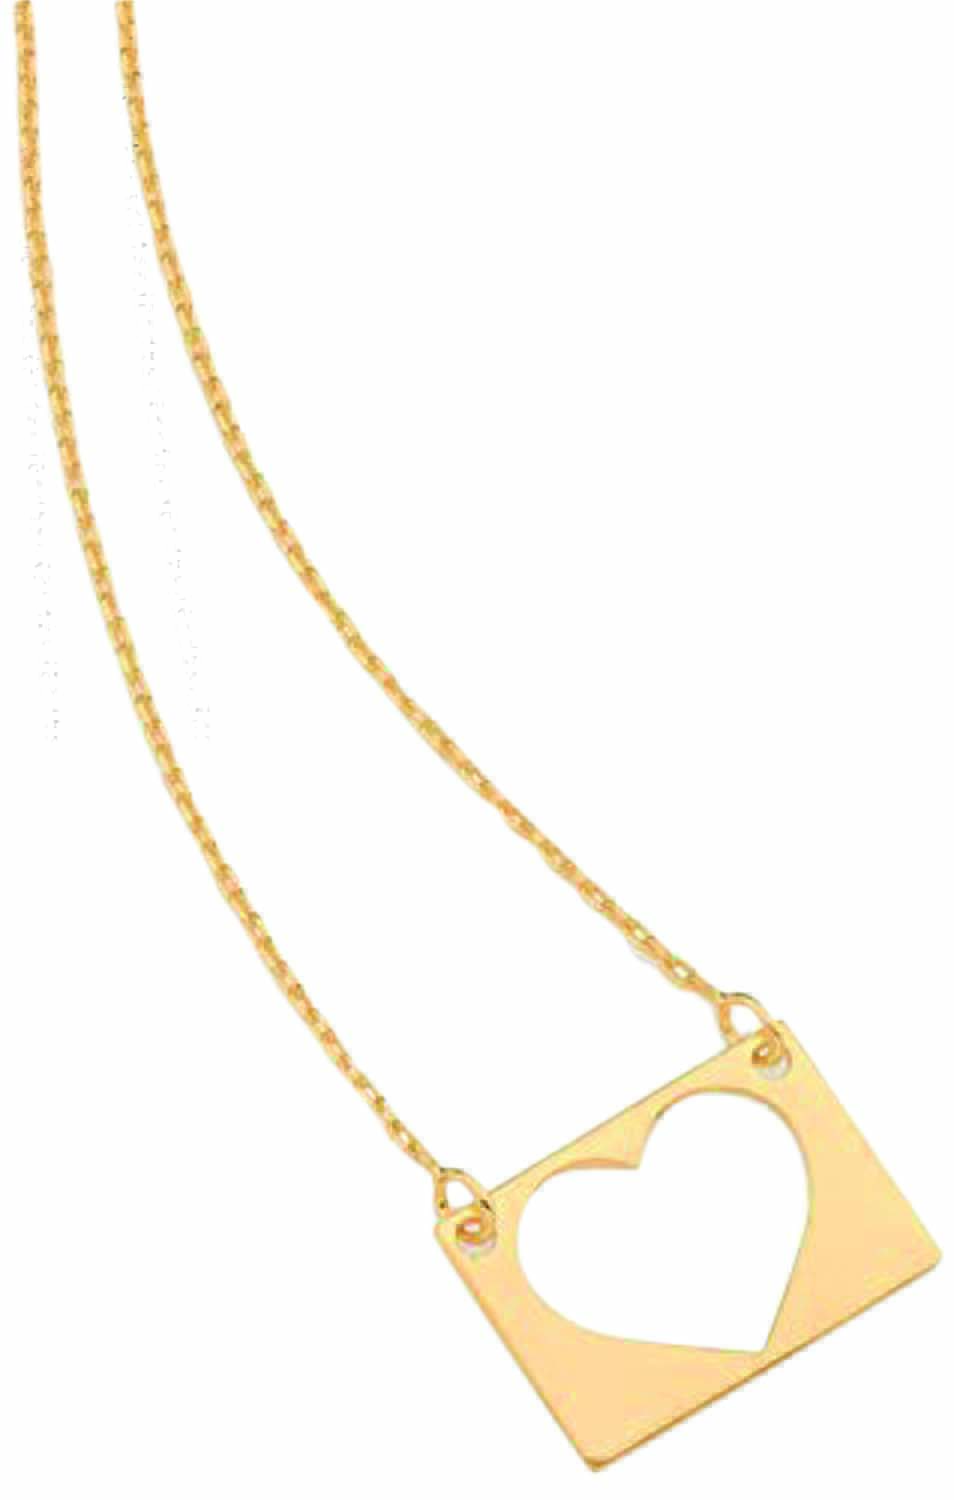 Colar de ouro com pingente de coração vazado em formato retangular